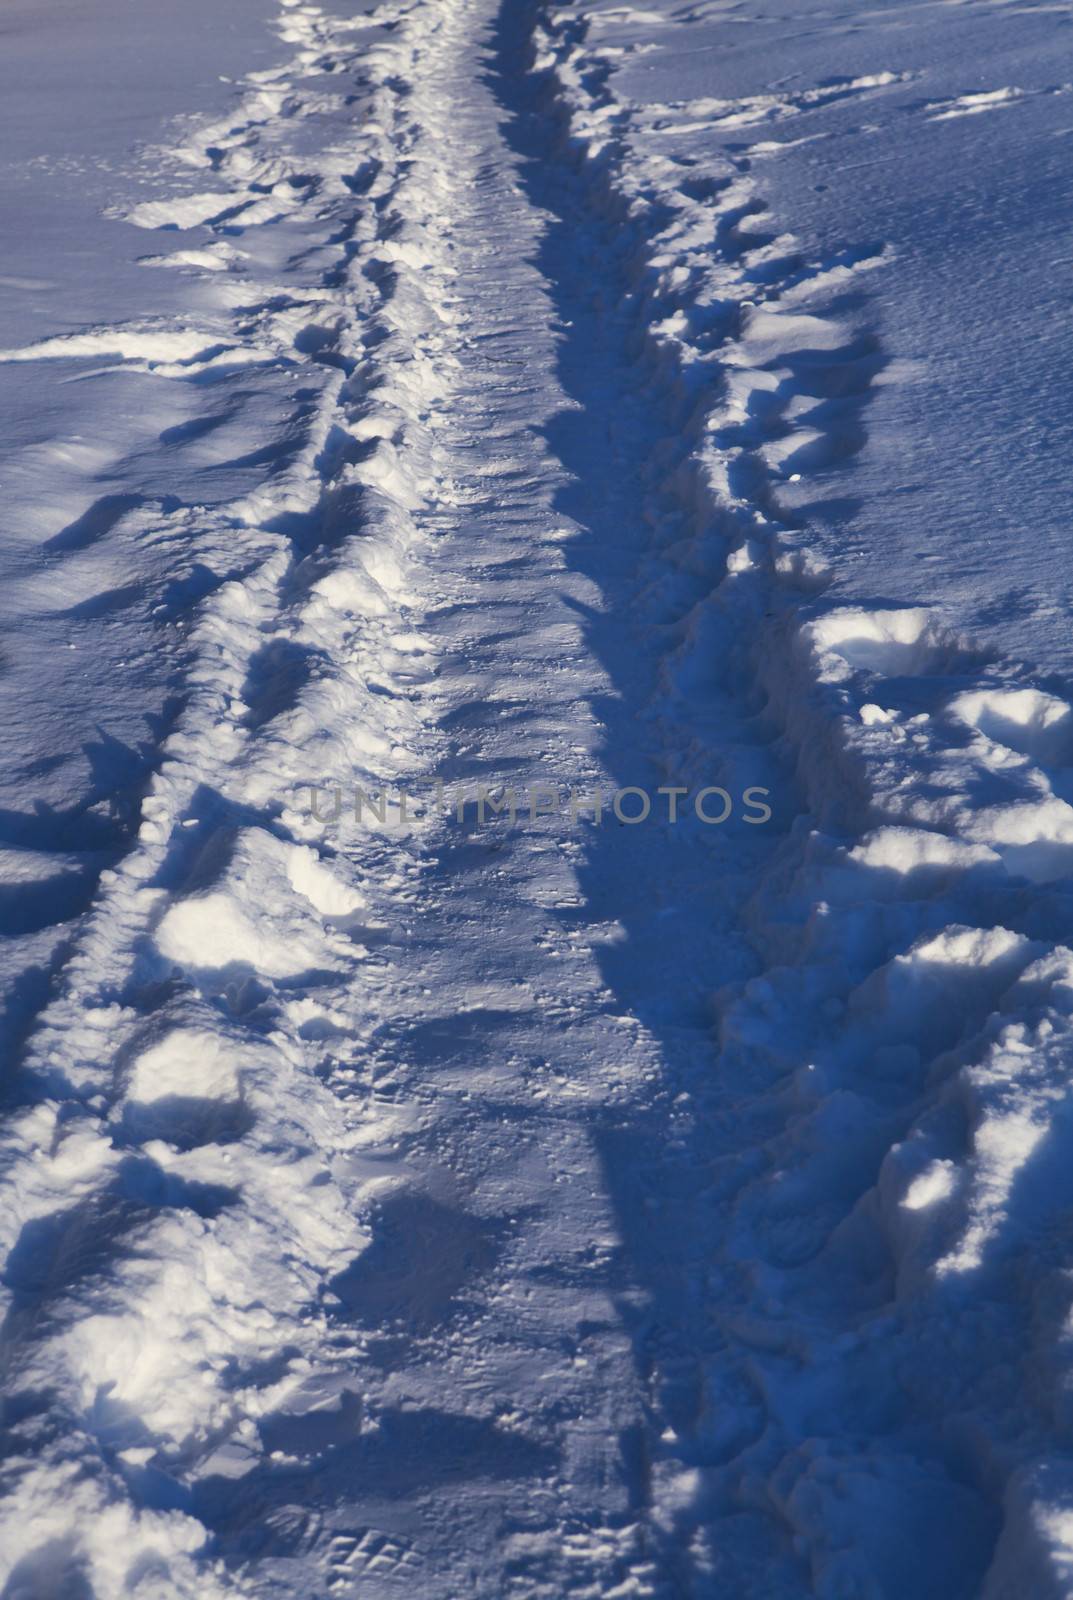 winter footpath which was trodden by pedestrians in snow